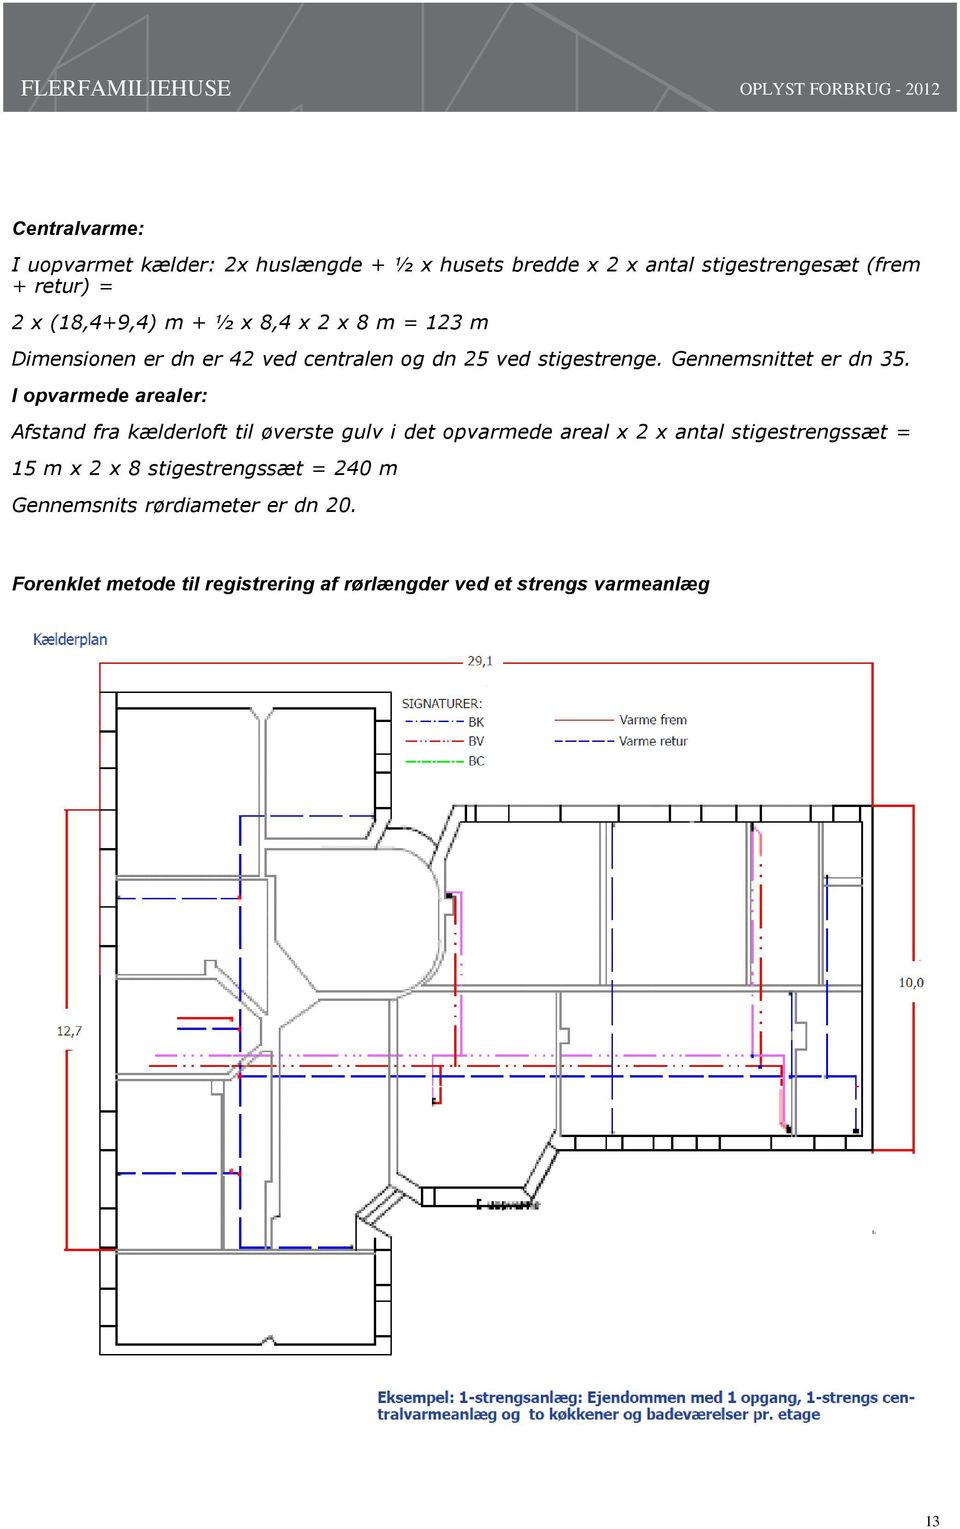 I opvarmede arealer: Afstand fra kælderloft til øverste gulv i det opvarmede areal x 2 x antal stigestrengssæt = 15 m x 2 x 8